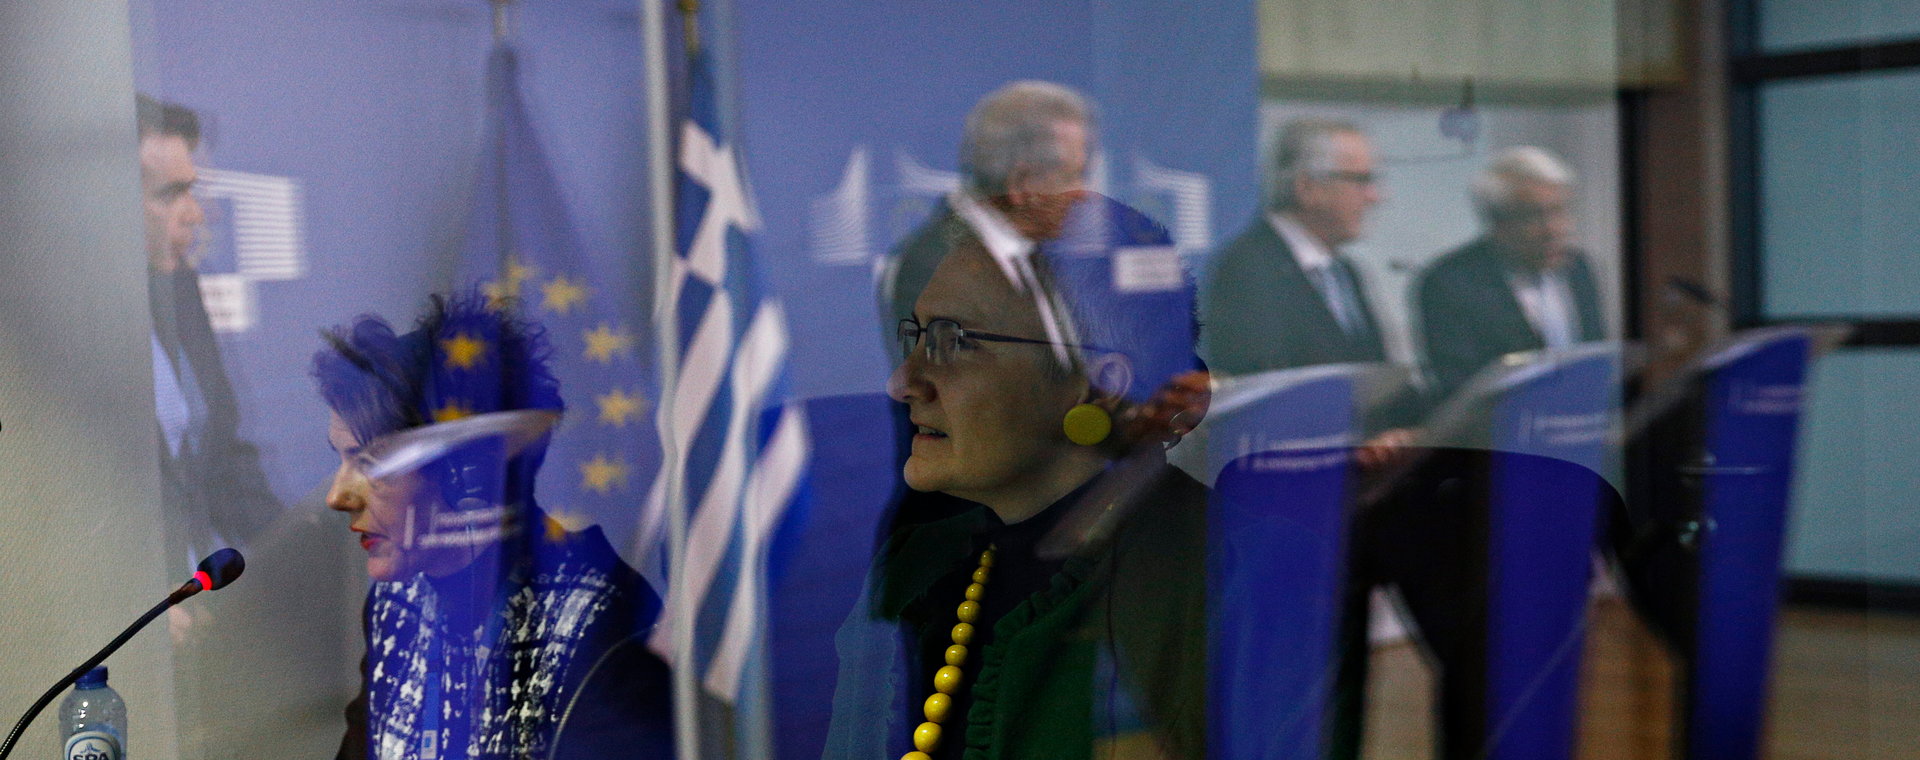 Tłumaczki podczas konferencji prasowej przewodniczącego Komisji Europejskiej Jean-Claude Junckera. Bruksela, grudzień 2018.